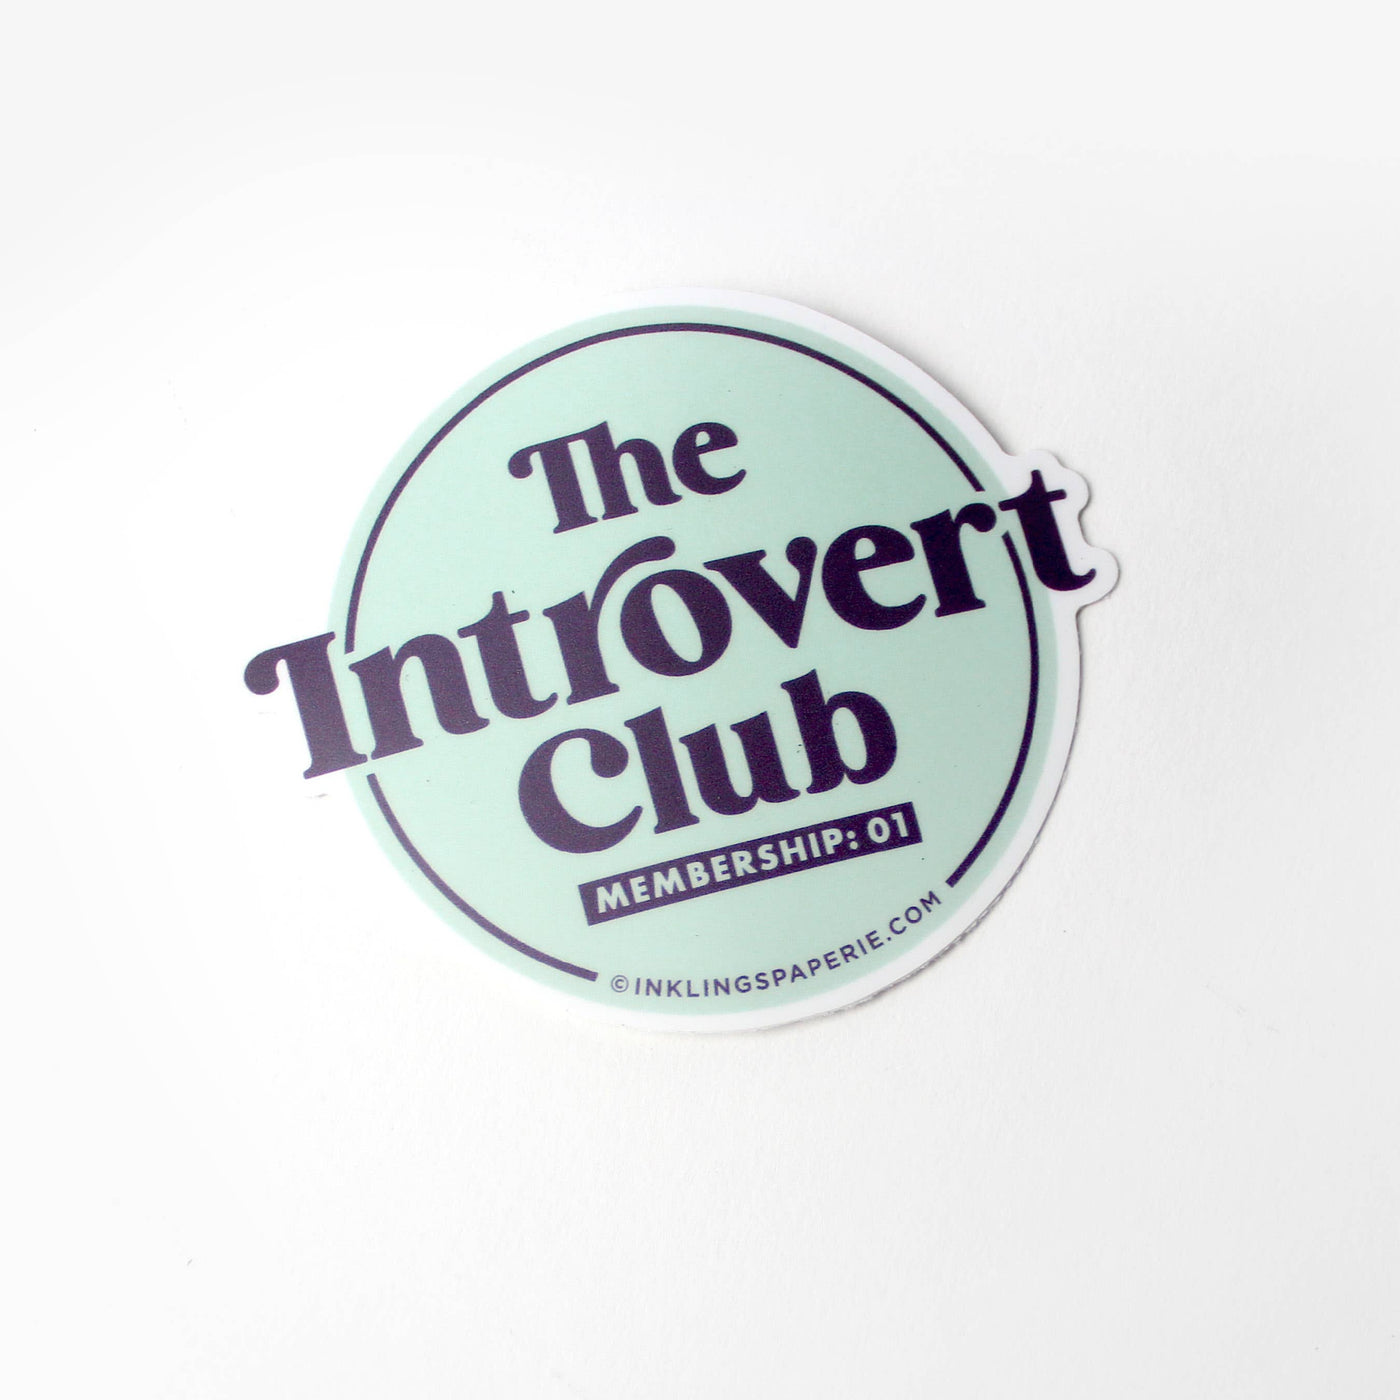 Introvert Club Sticker